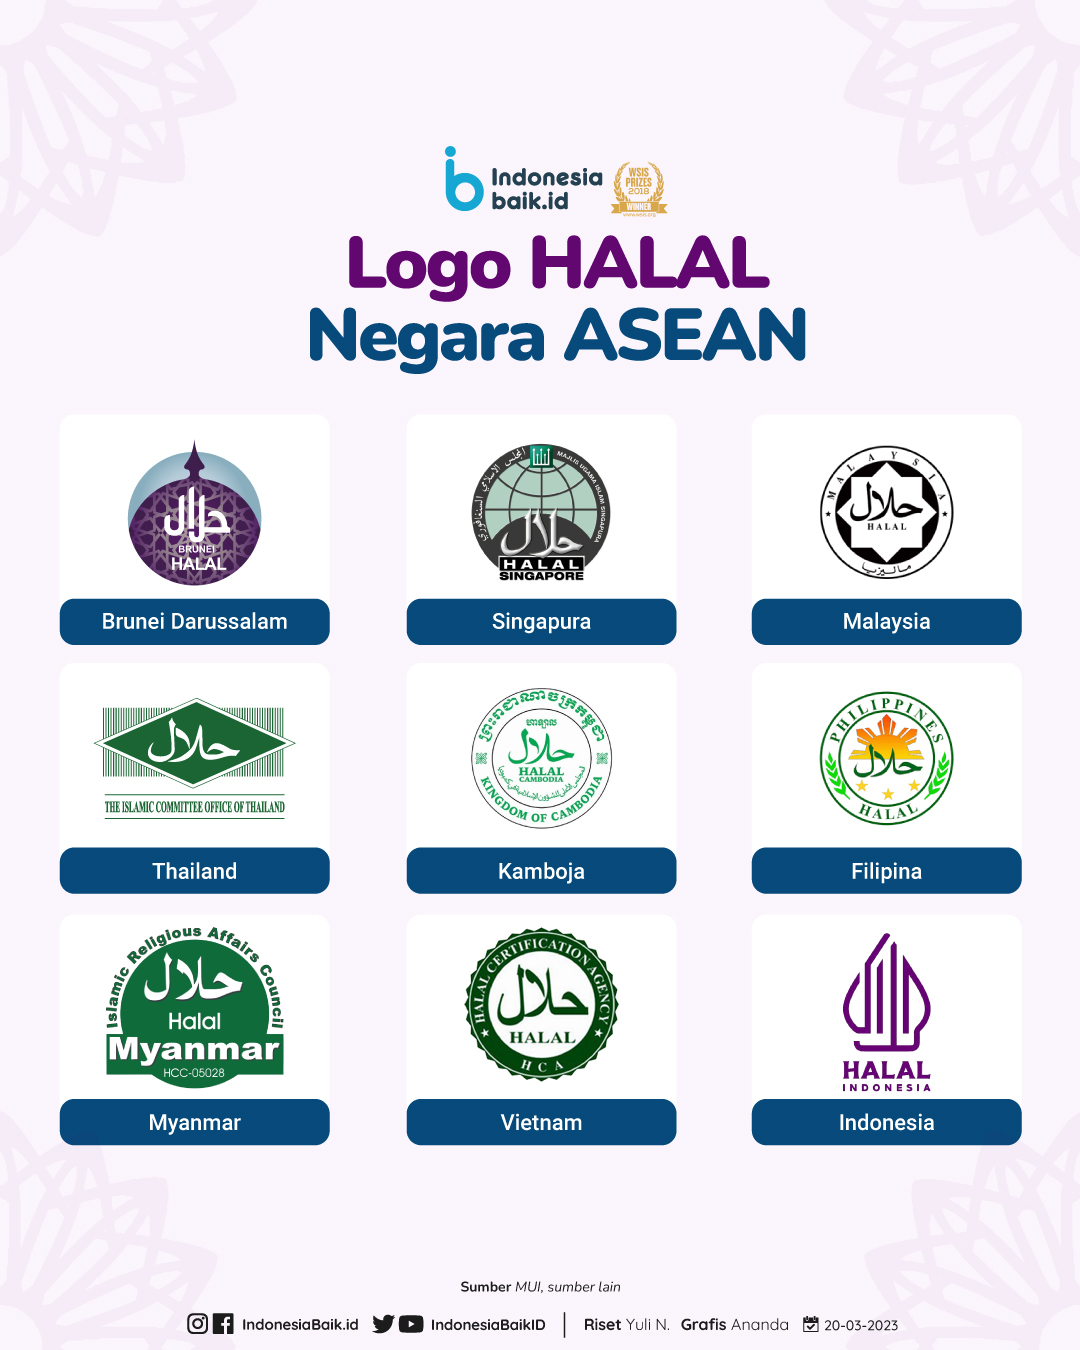 Ragam logo halal di negara Asia Tenggara